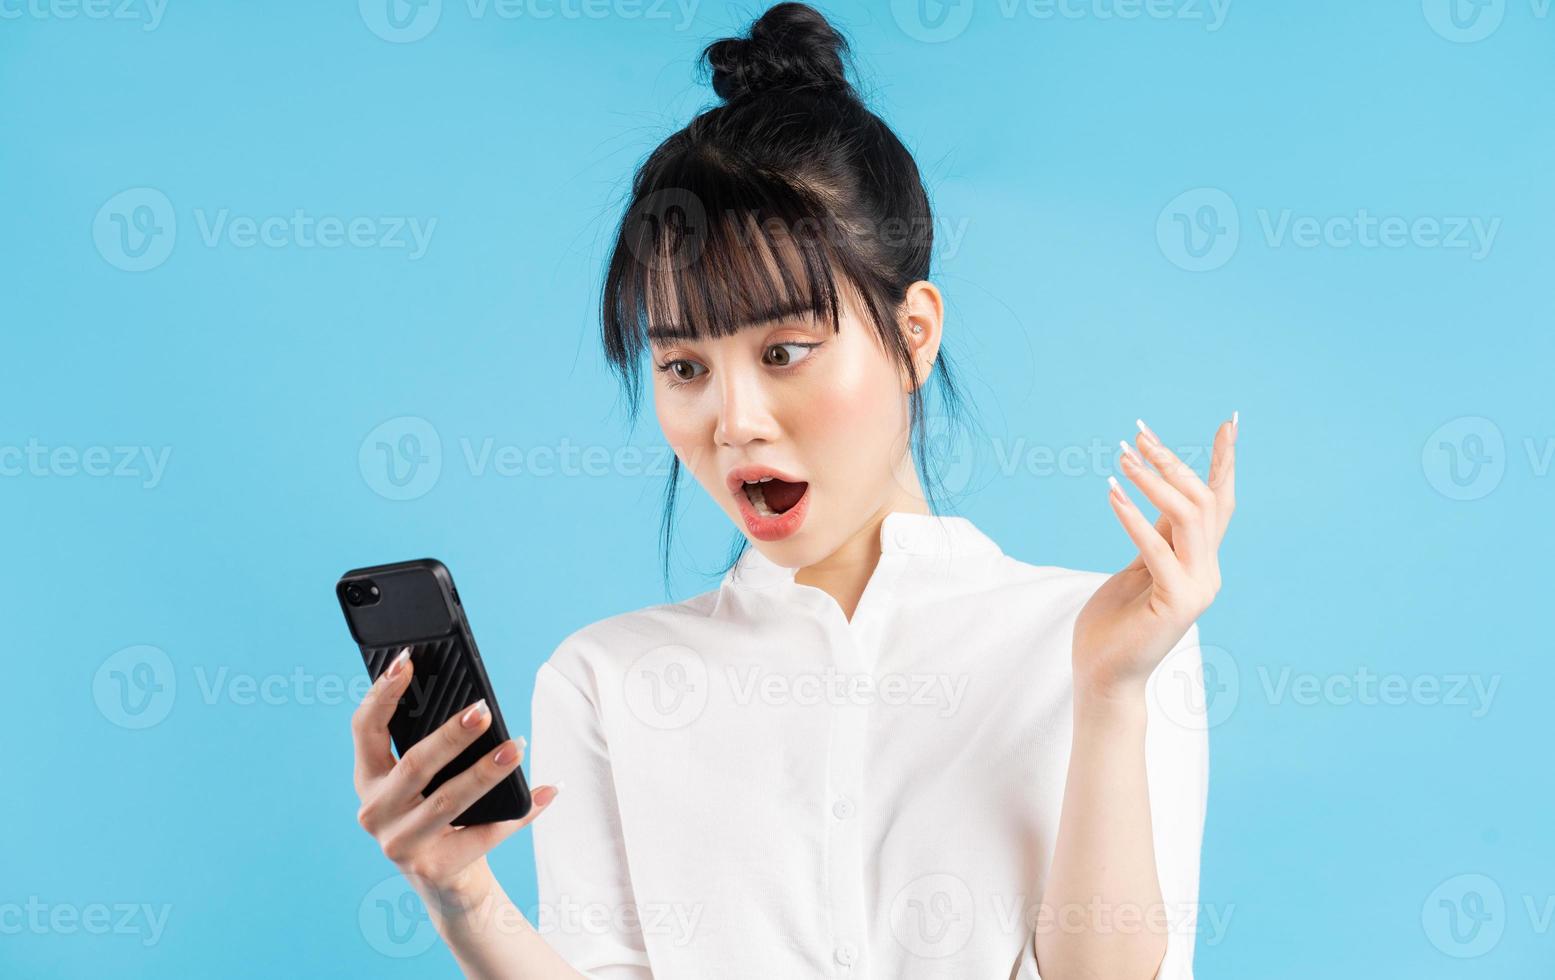 belle femme asiatique tenant un téléphone sur fond bleu avec une expression surprise photo